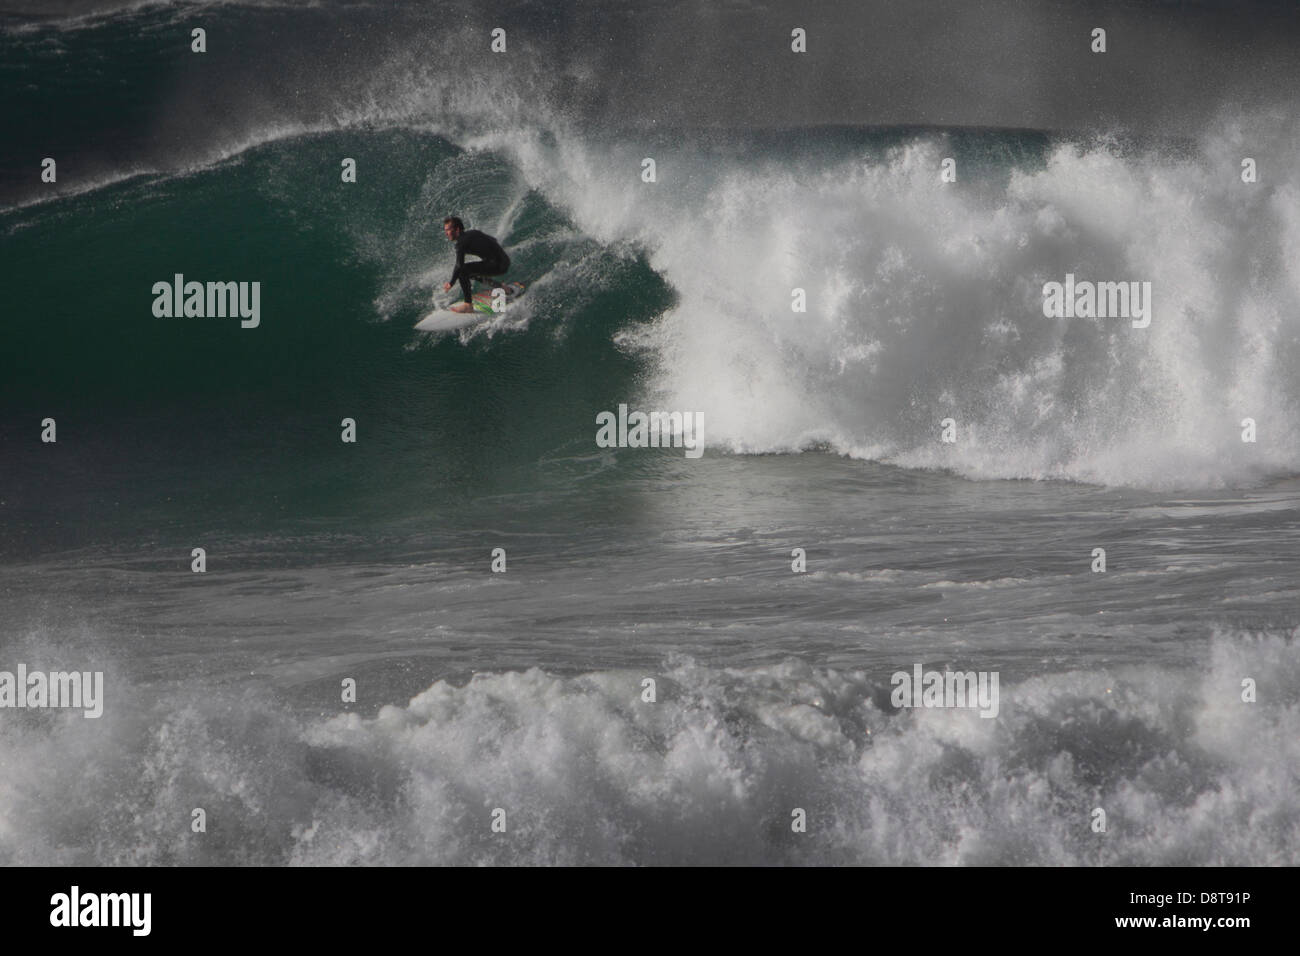 FISTRAL BEACH, Newquay. Surfista desconocido montando una onda en el BUCS (Universidades y Colegios Británicos Sport) Campeonatos de Surf. Foto de stock